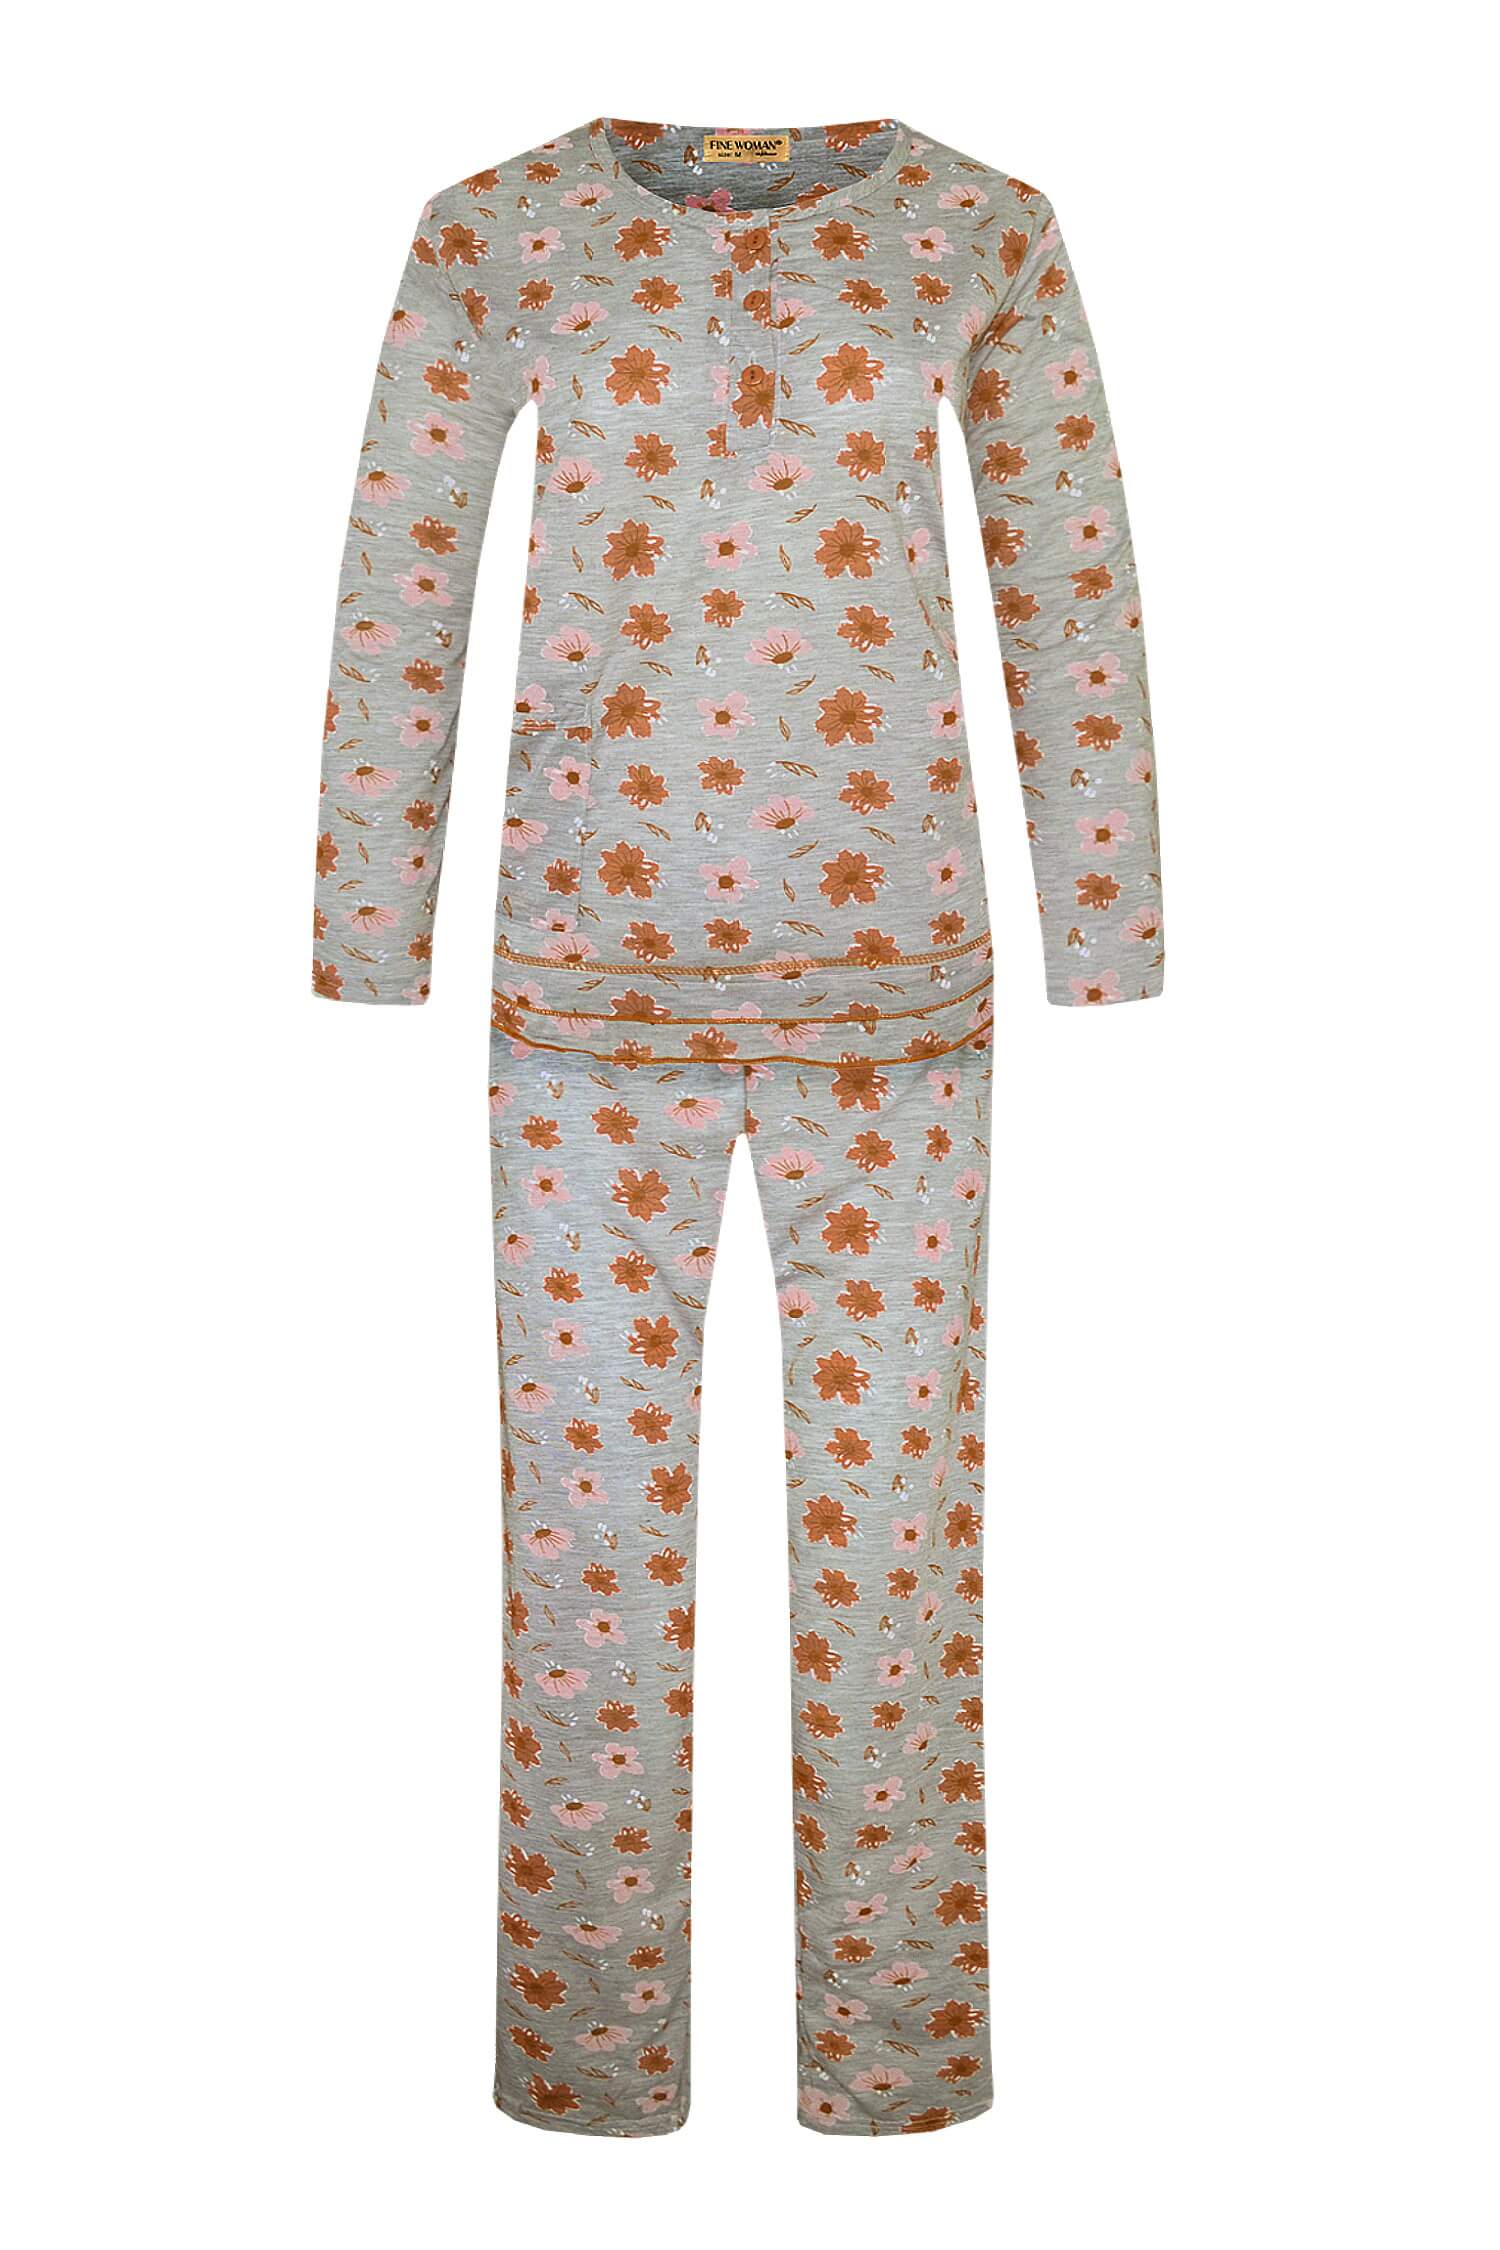 Arenda dámské dlouhé pyžamo 2297 M oranžová